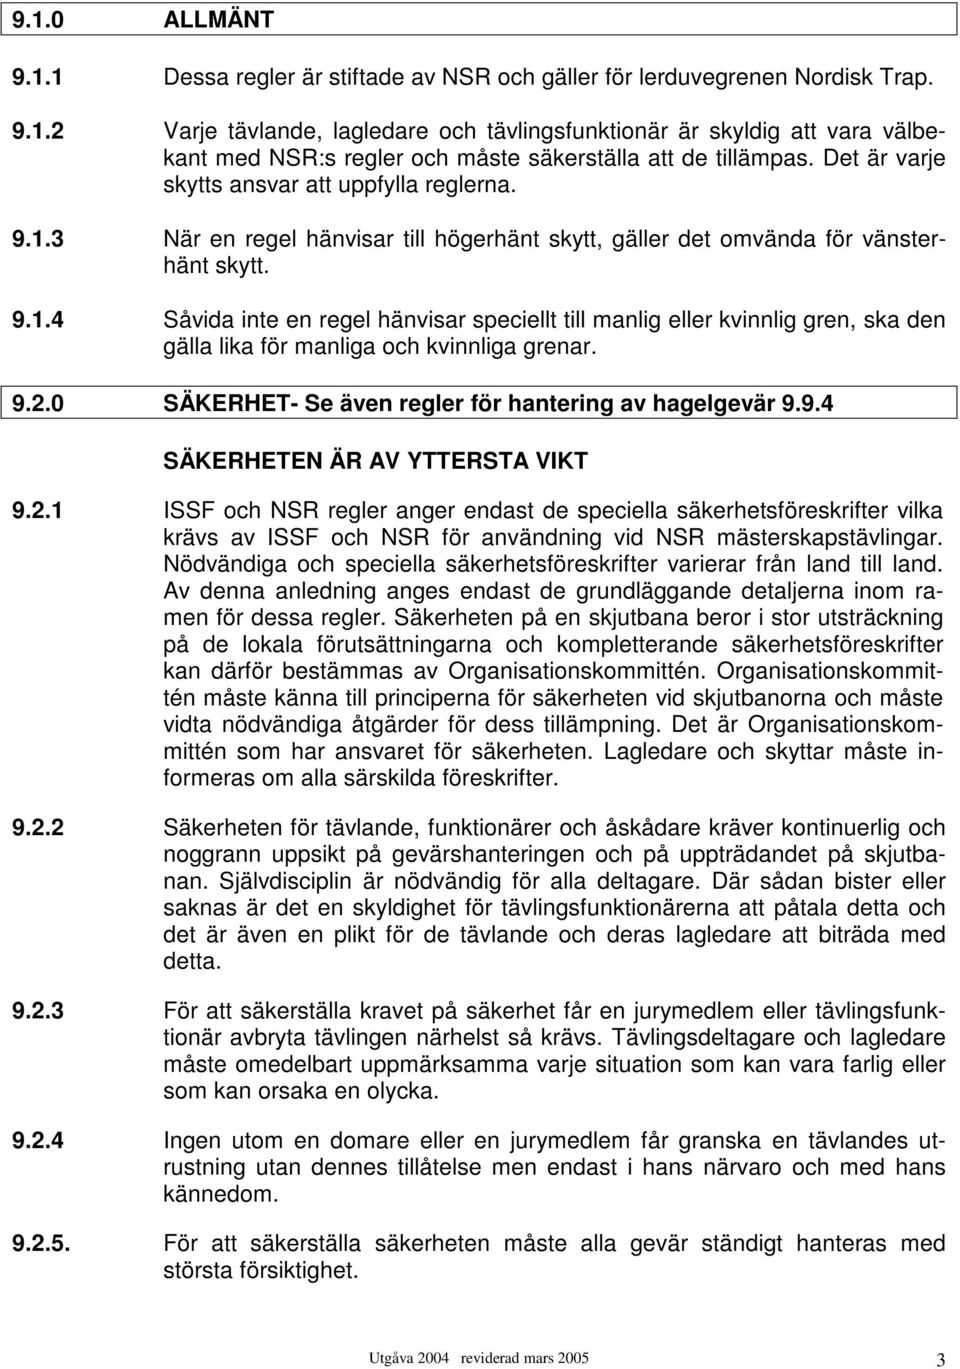 9.2.0 SÄKERHET- Se även regler för hantering av hagelgevär 9.9.4 SÄKERHETEN ÄR AV YTTERSTA VIKT 9.2.1 ISSF och NSR regler anger endast de speciella säkerhetsföreskrifter vilka krävs av ISSF och NSR för användning vid NSR mästerskapstävlingar.